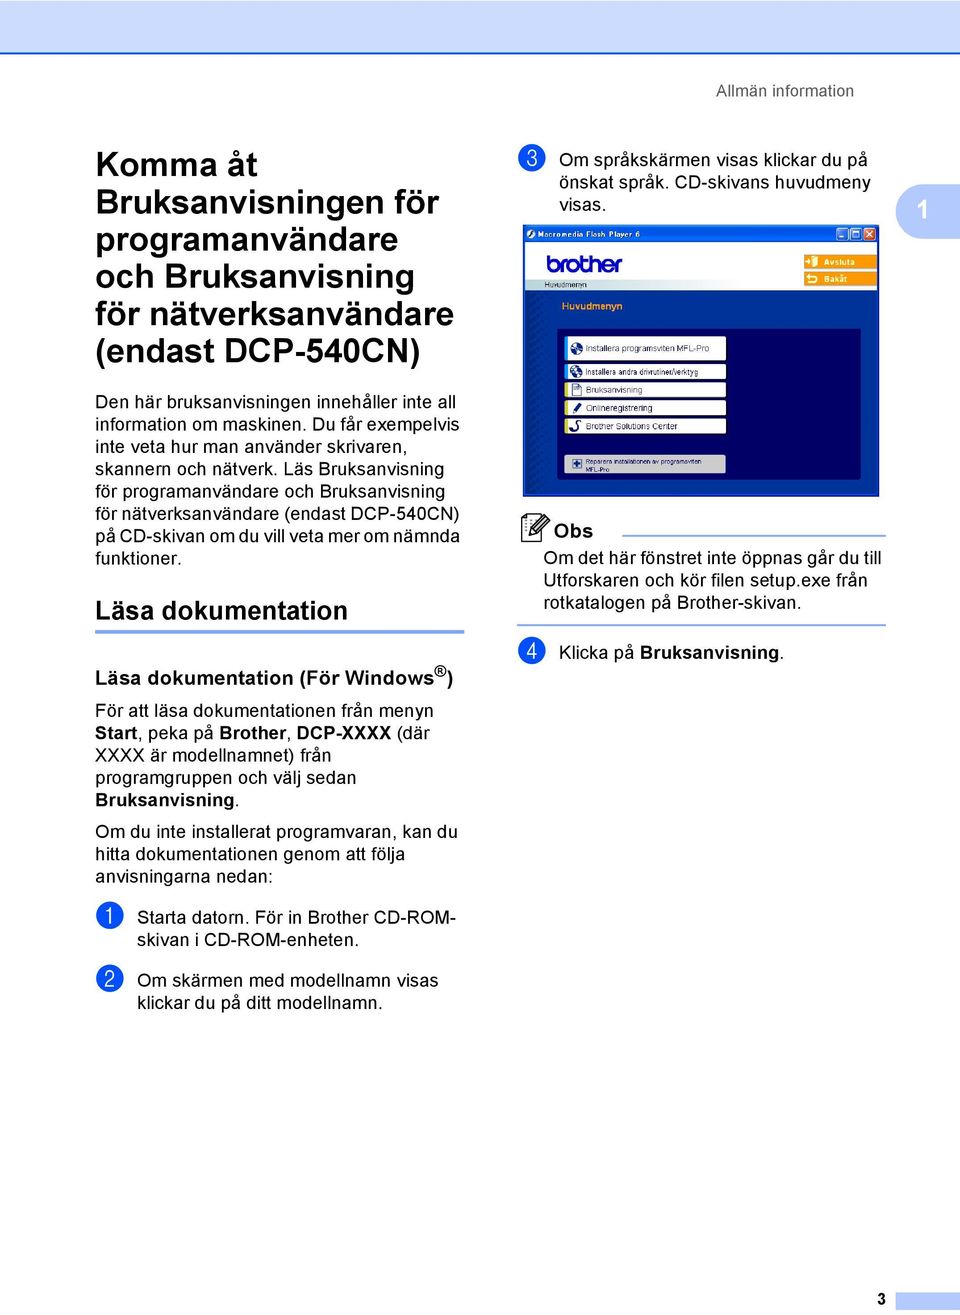 Läs Bruksanvisning för programanvändare och Bruksanvisning för nätverksanvändare (endast DCP-540CN) på CD-skivan om du vill veta mer om nämnda funktioner.